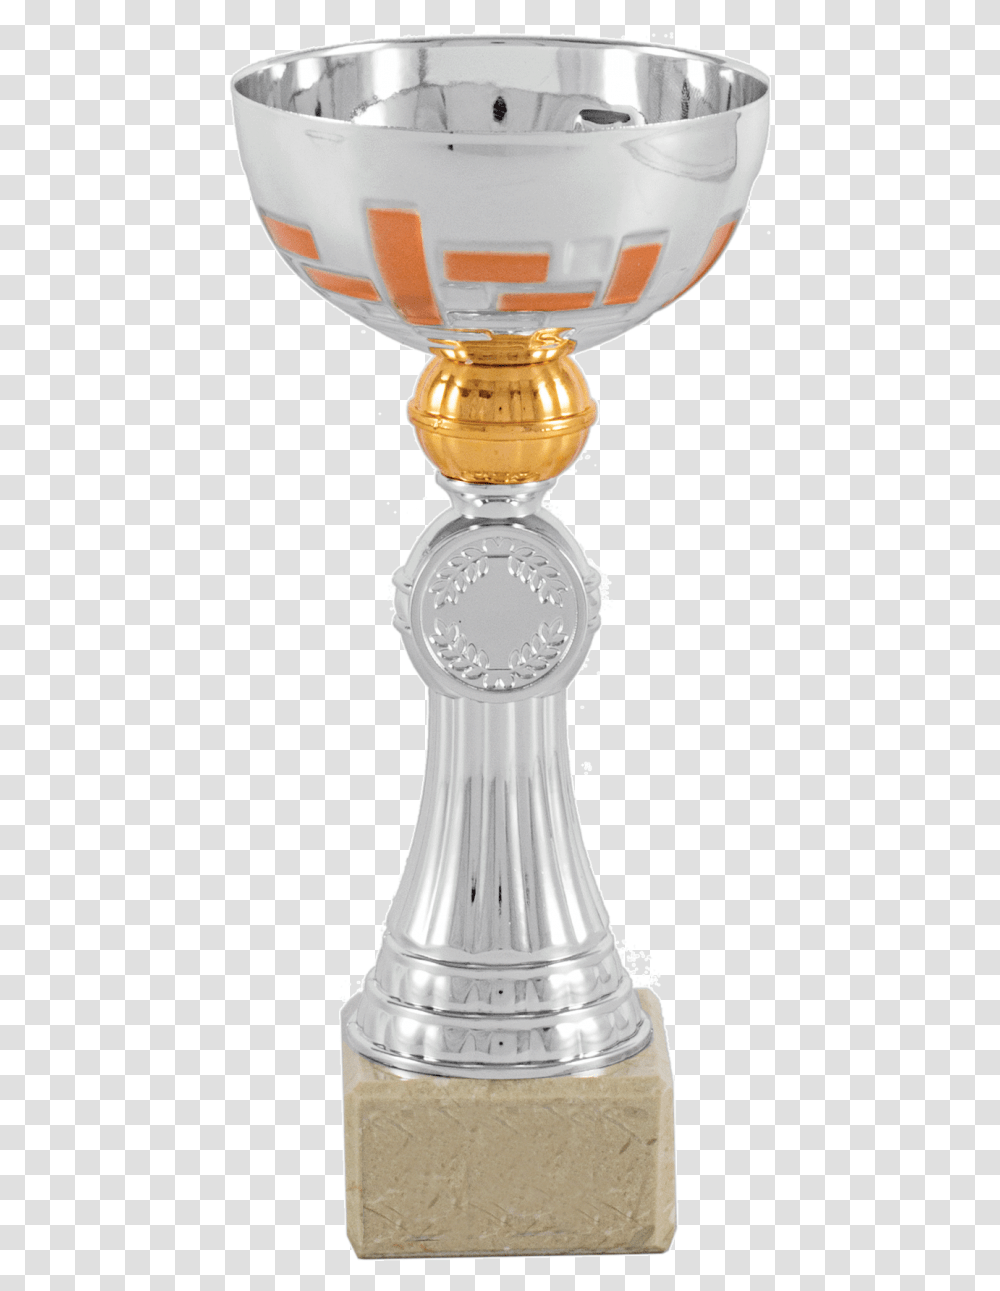 Champagne Stemware Download Trophy, Beverage, Drink, Alcohol, Liquor Transparent Png